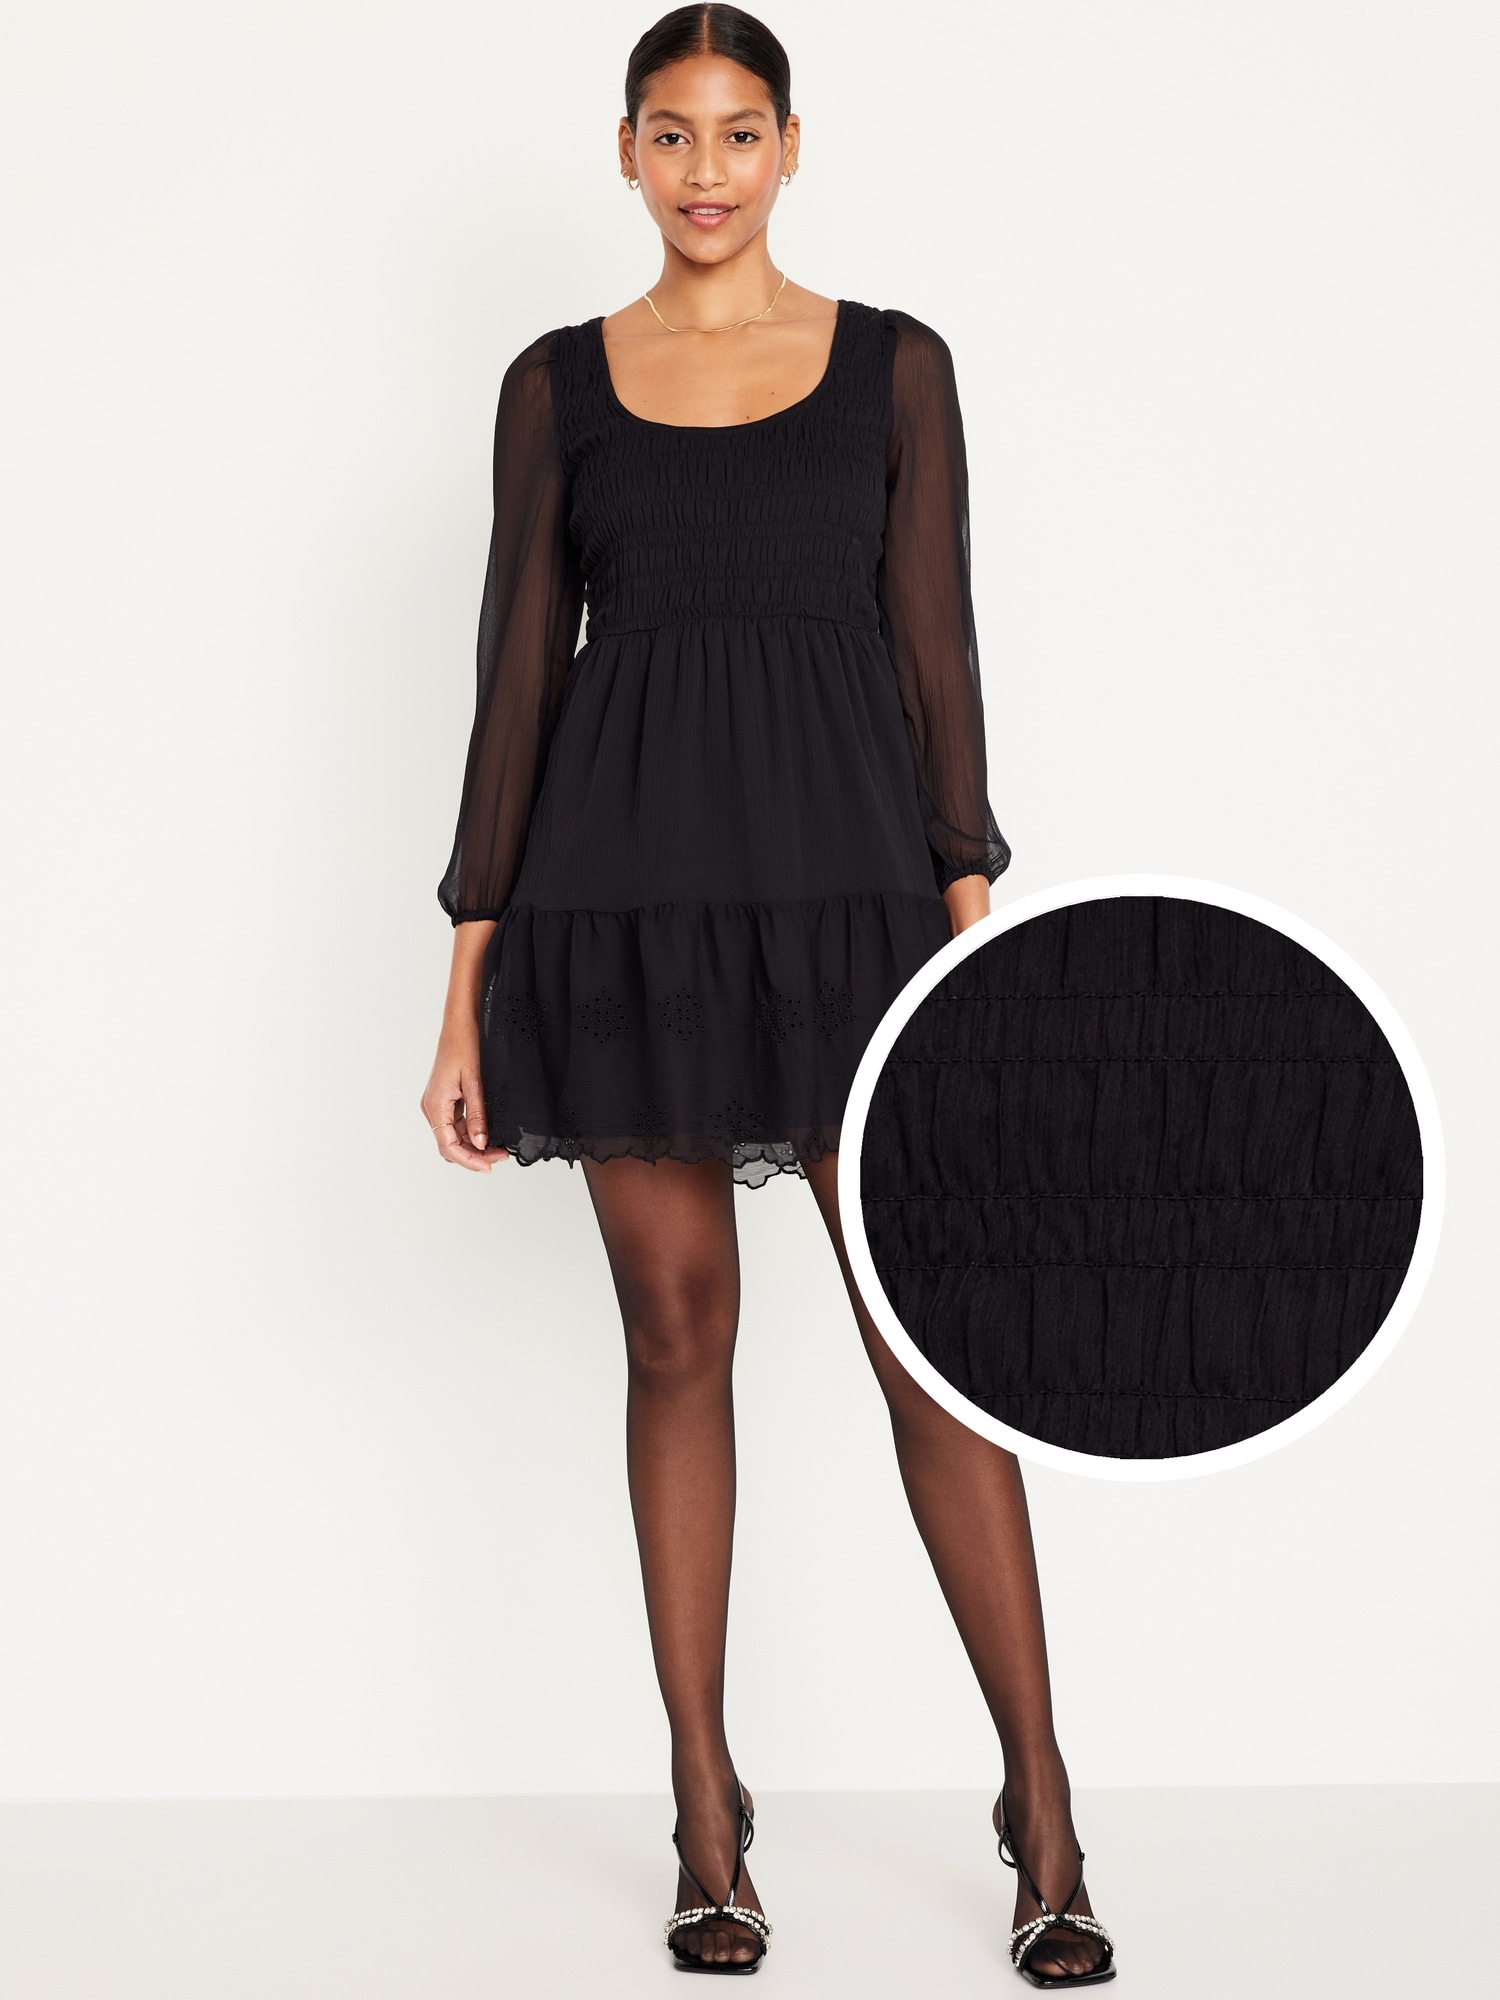 Scoop Back Fit and Flare Dress - Black, Fantastical